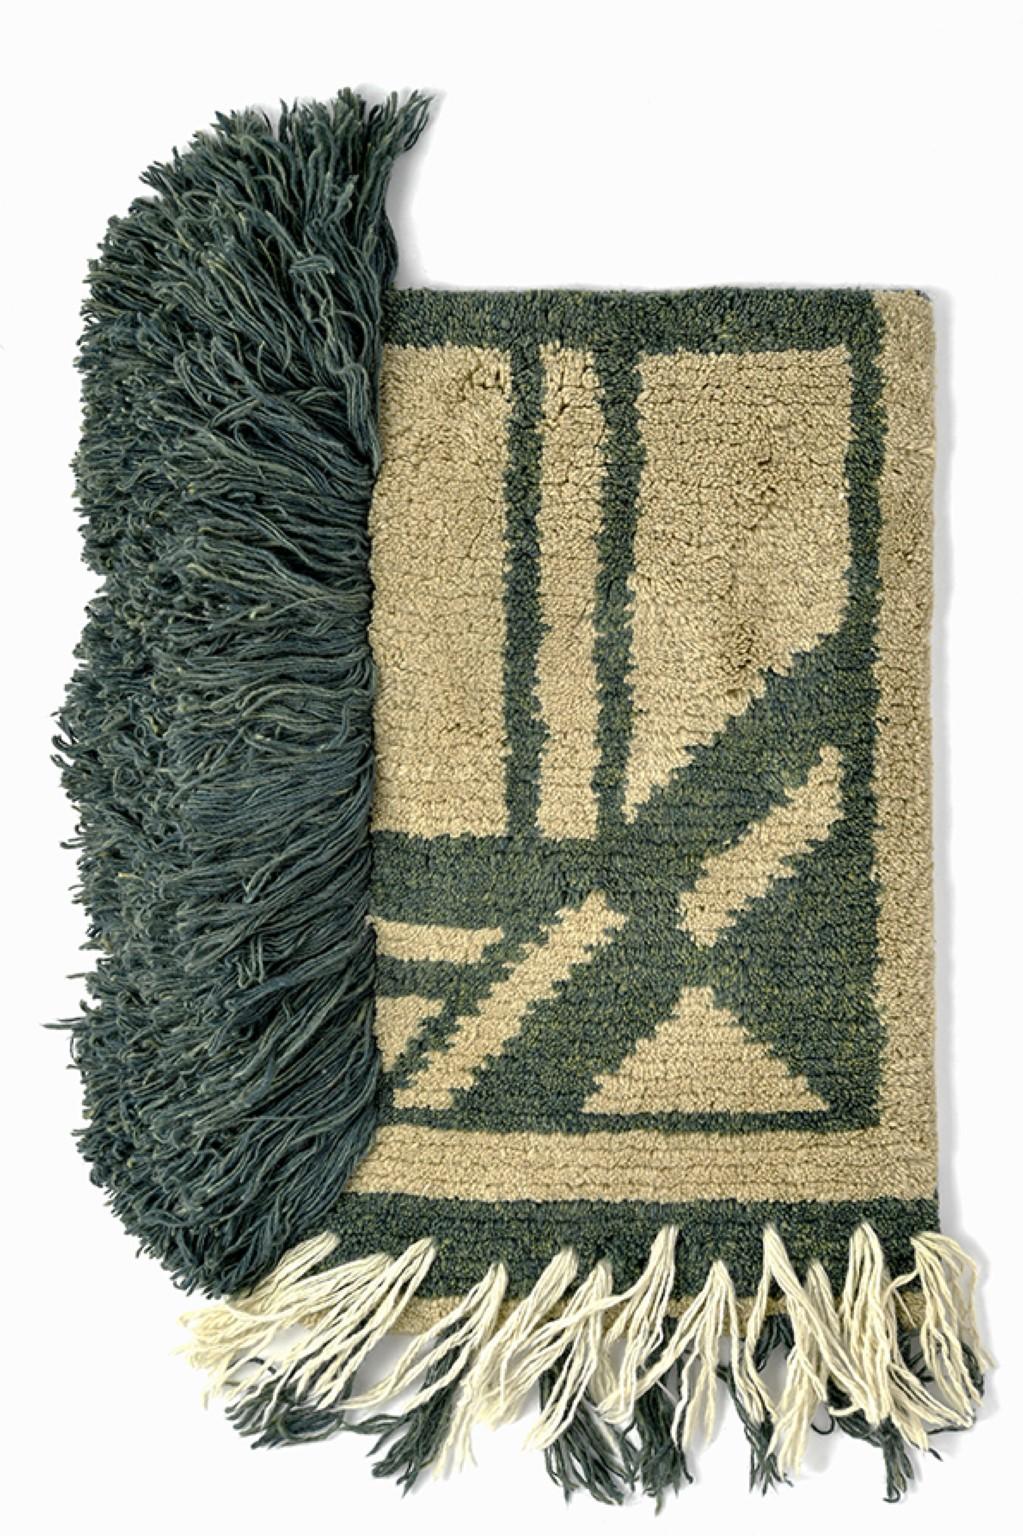 Nr. 220 handgeknüpftes Textilposter von Lyk Carpet
Hommage an die Bauhausfrauen
Abmessungen: B 55 x L 69 cm.
MATERIALIEN: 100% tibetische Hochlandwolle, handgekämmte und handgesponnene Schurwolle, natürliche pflanzengefärbte Wolle, 100 Knoten pro